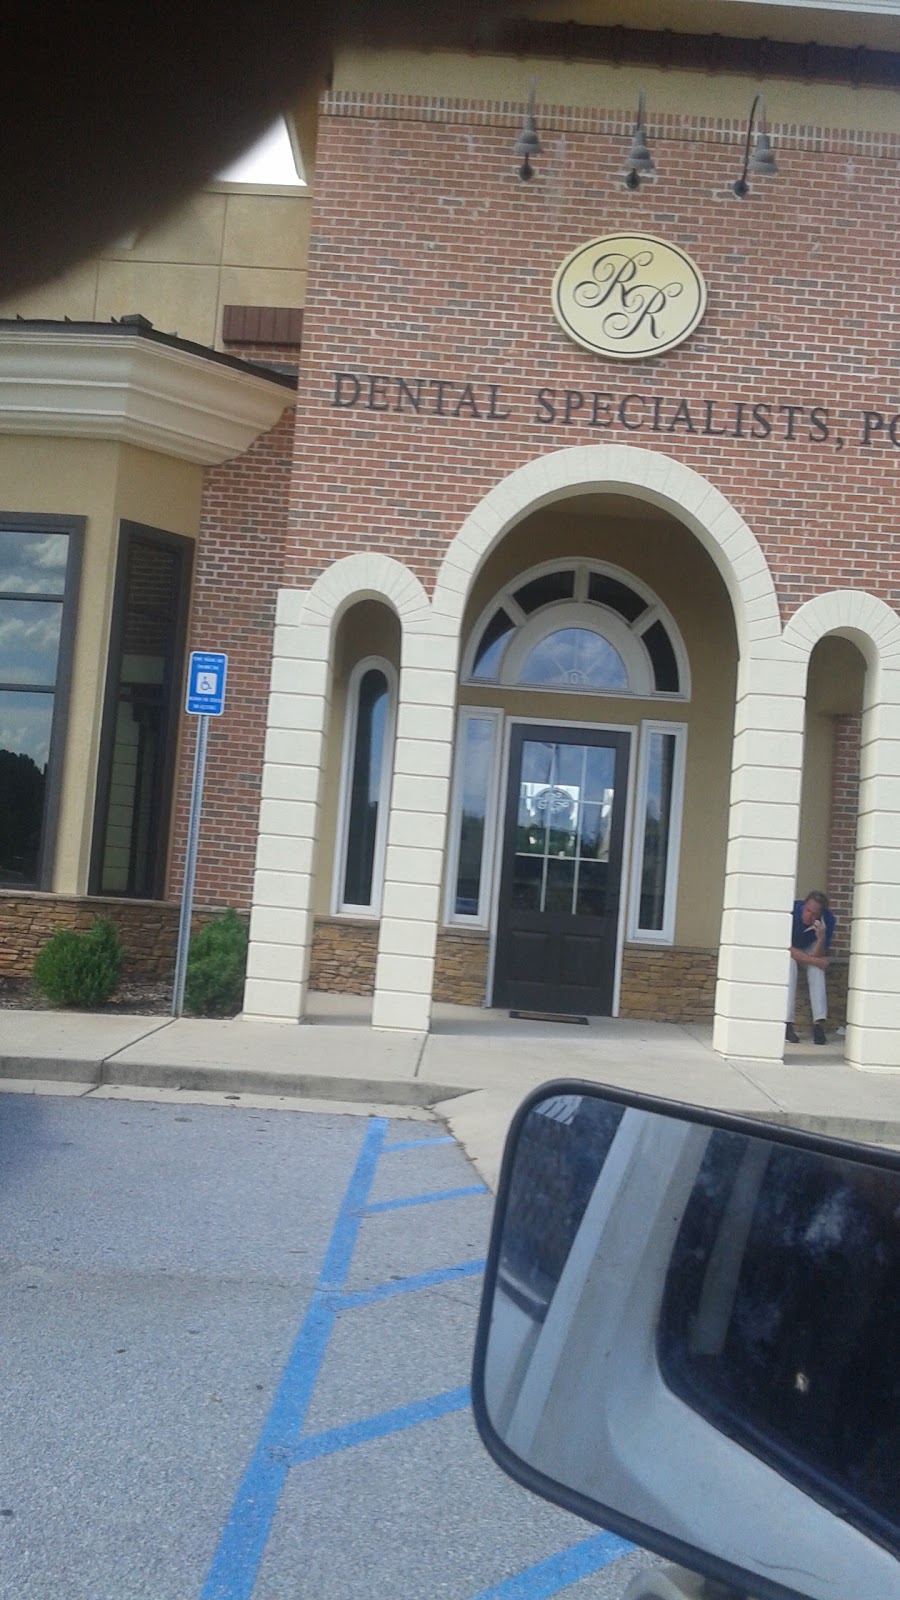 Dental Specialist | 4010 Chapel Hill Rd, Douglasville, GA 30135, USA | Phone: (770) 949-2400